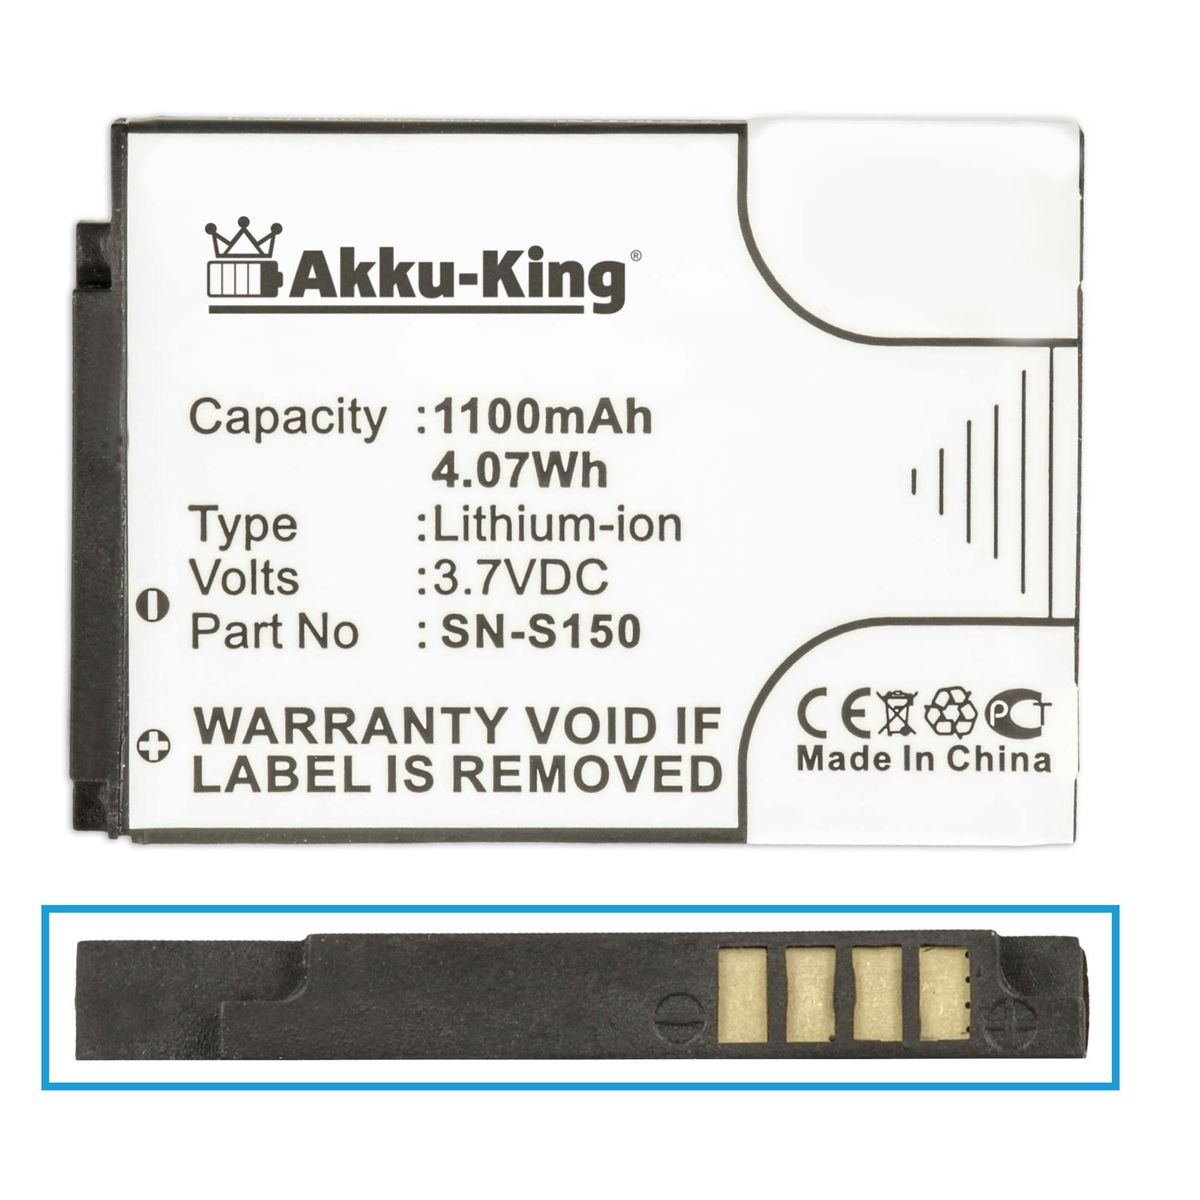 AKKU-KING Akku kompatibel mit Philips N-S150 Volt, 3.7 Geräte-Akku, Li-Ion 1100mAh